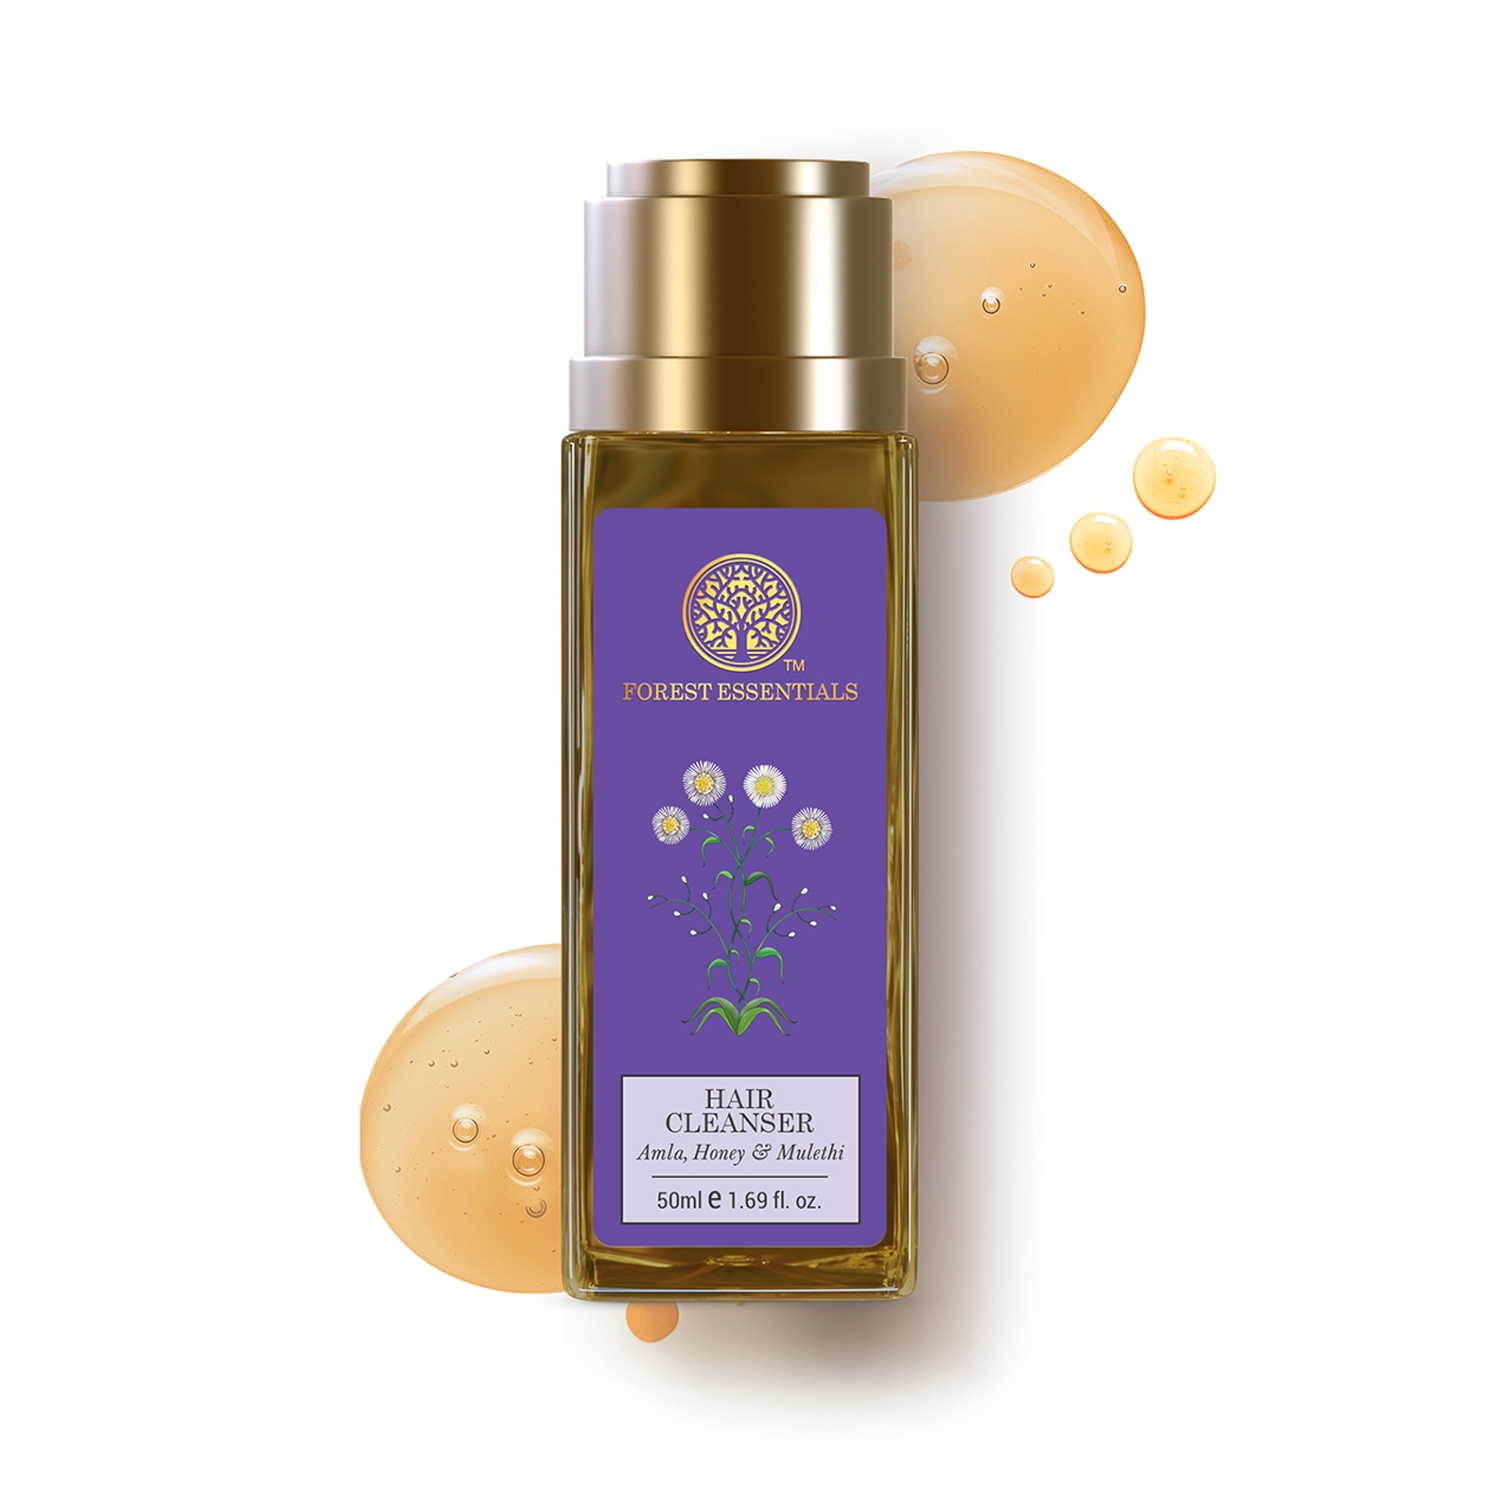 Forest Essentials | Forest Essentials Amla Honey & Mulethi Hair Cleanser Shampoo (50 ml)